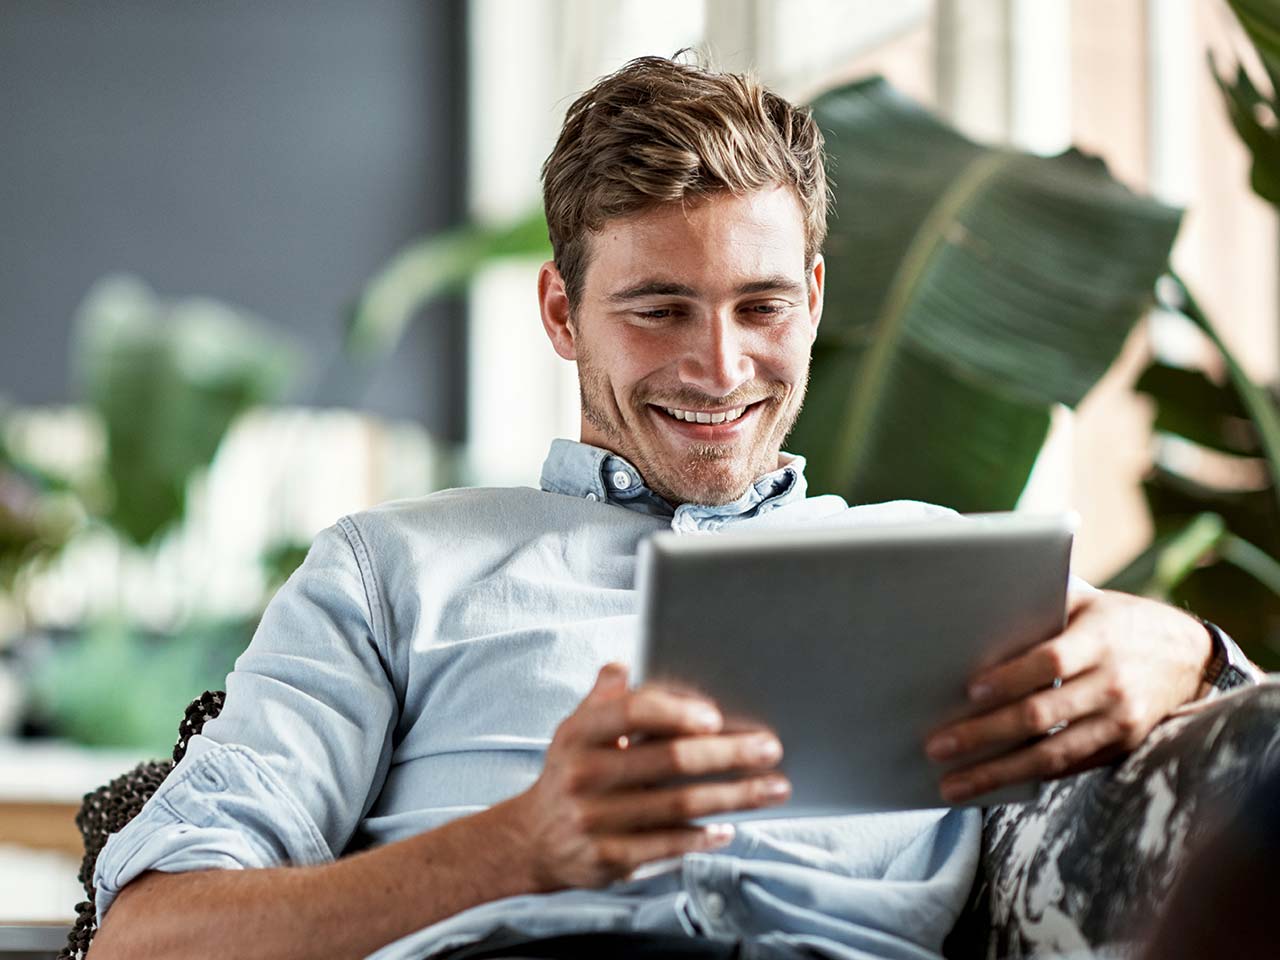 Man smiling looking at an iPad